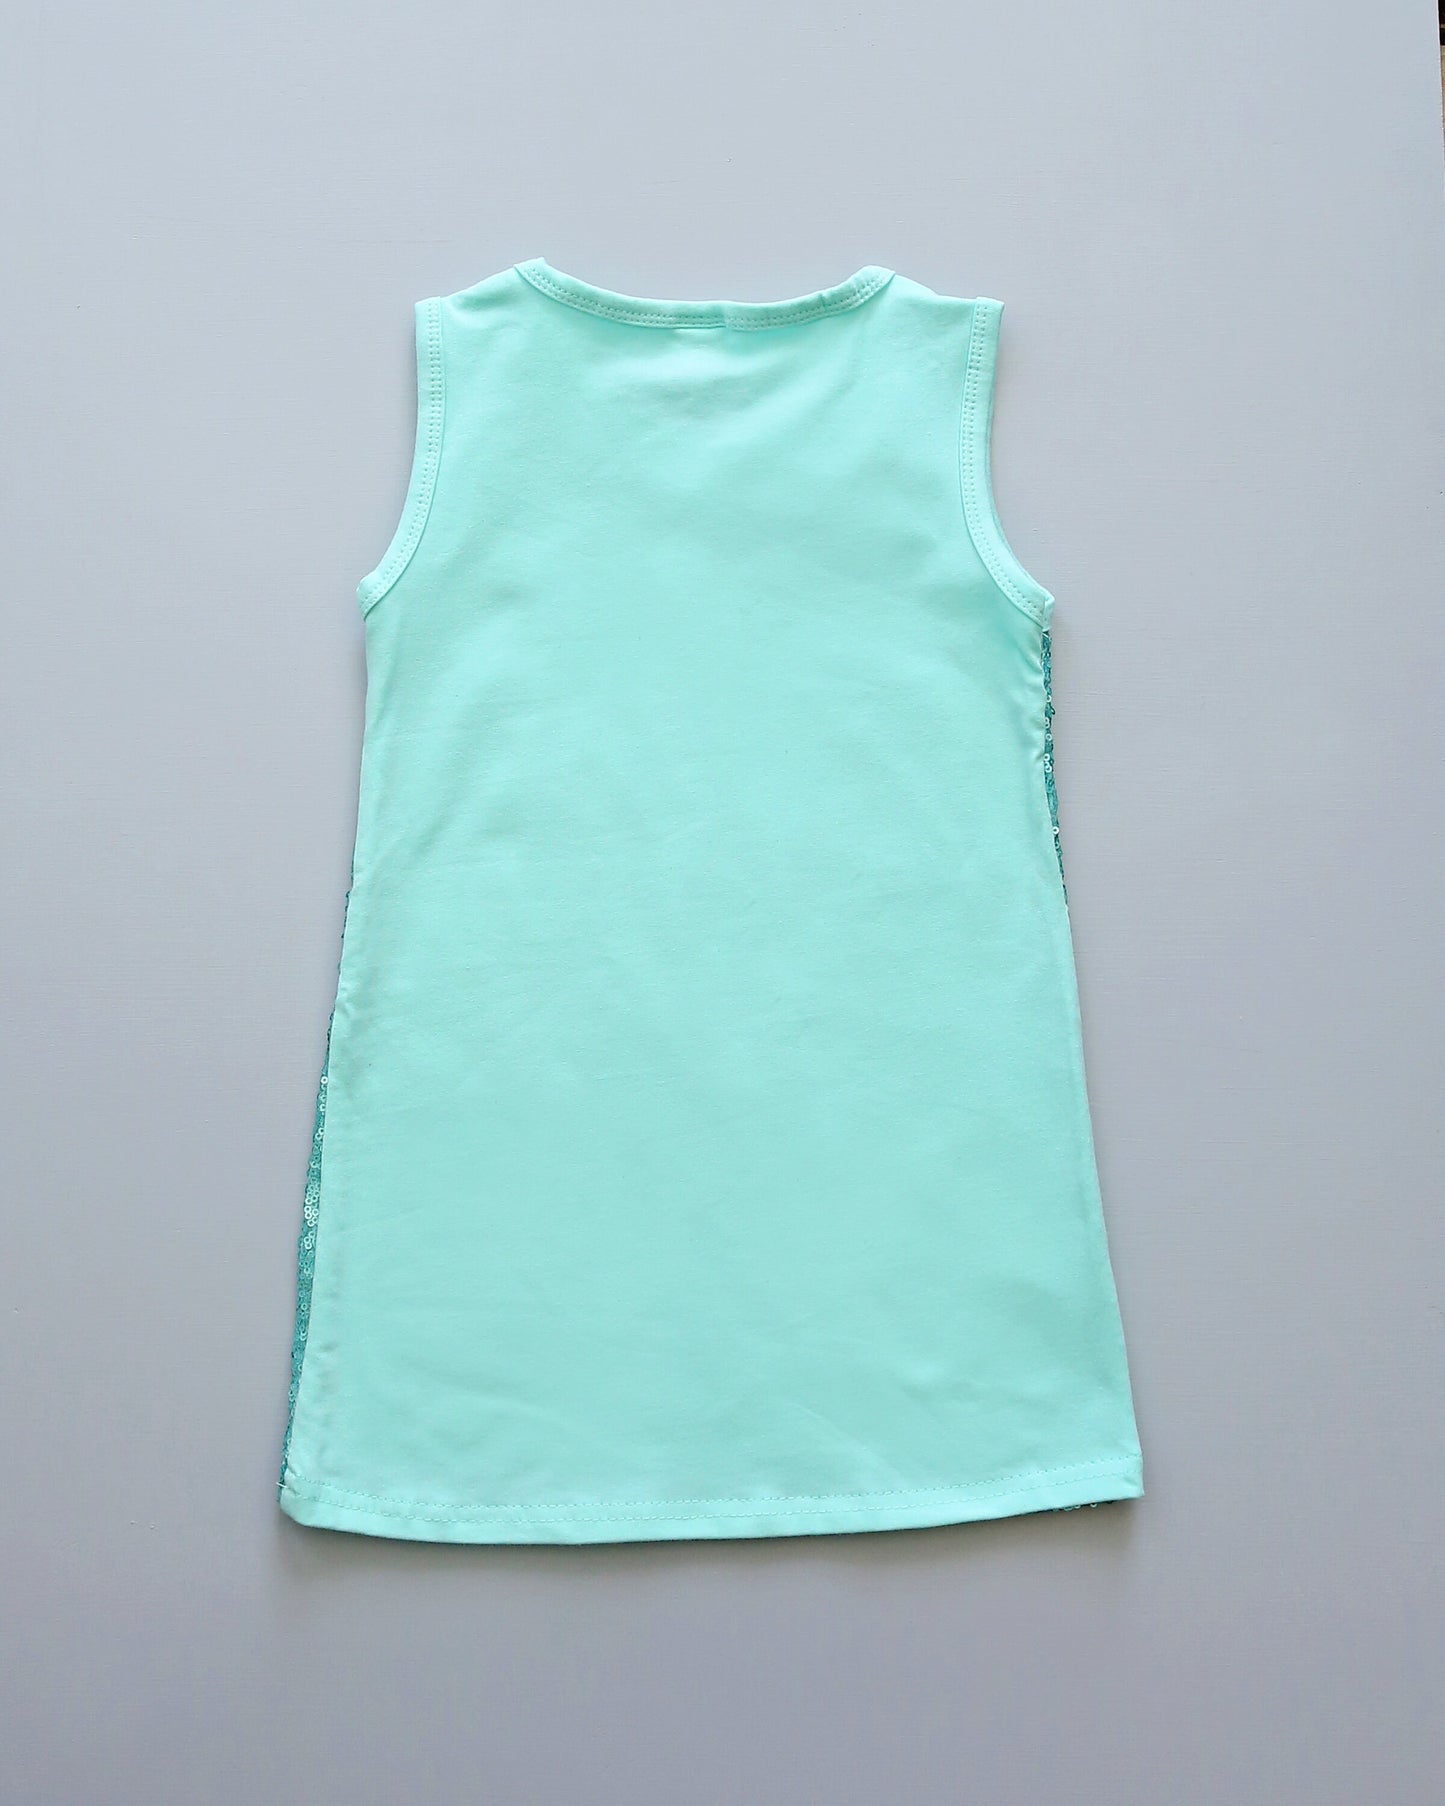 Aqua Sequin Dress - Aqua Sequin Tunic -Sequin Shift Dress - Birthday Dress - Party Dress - Sequin Tank Dress -  Aqua Dress